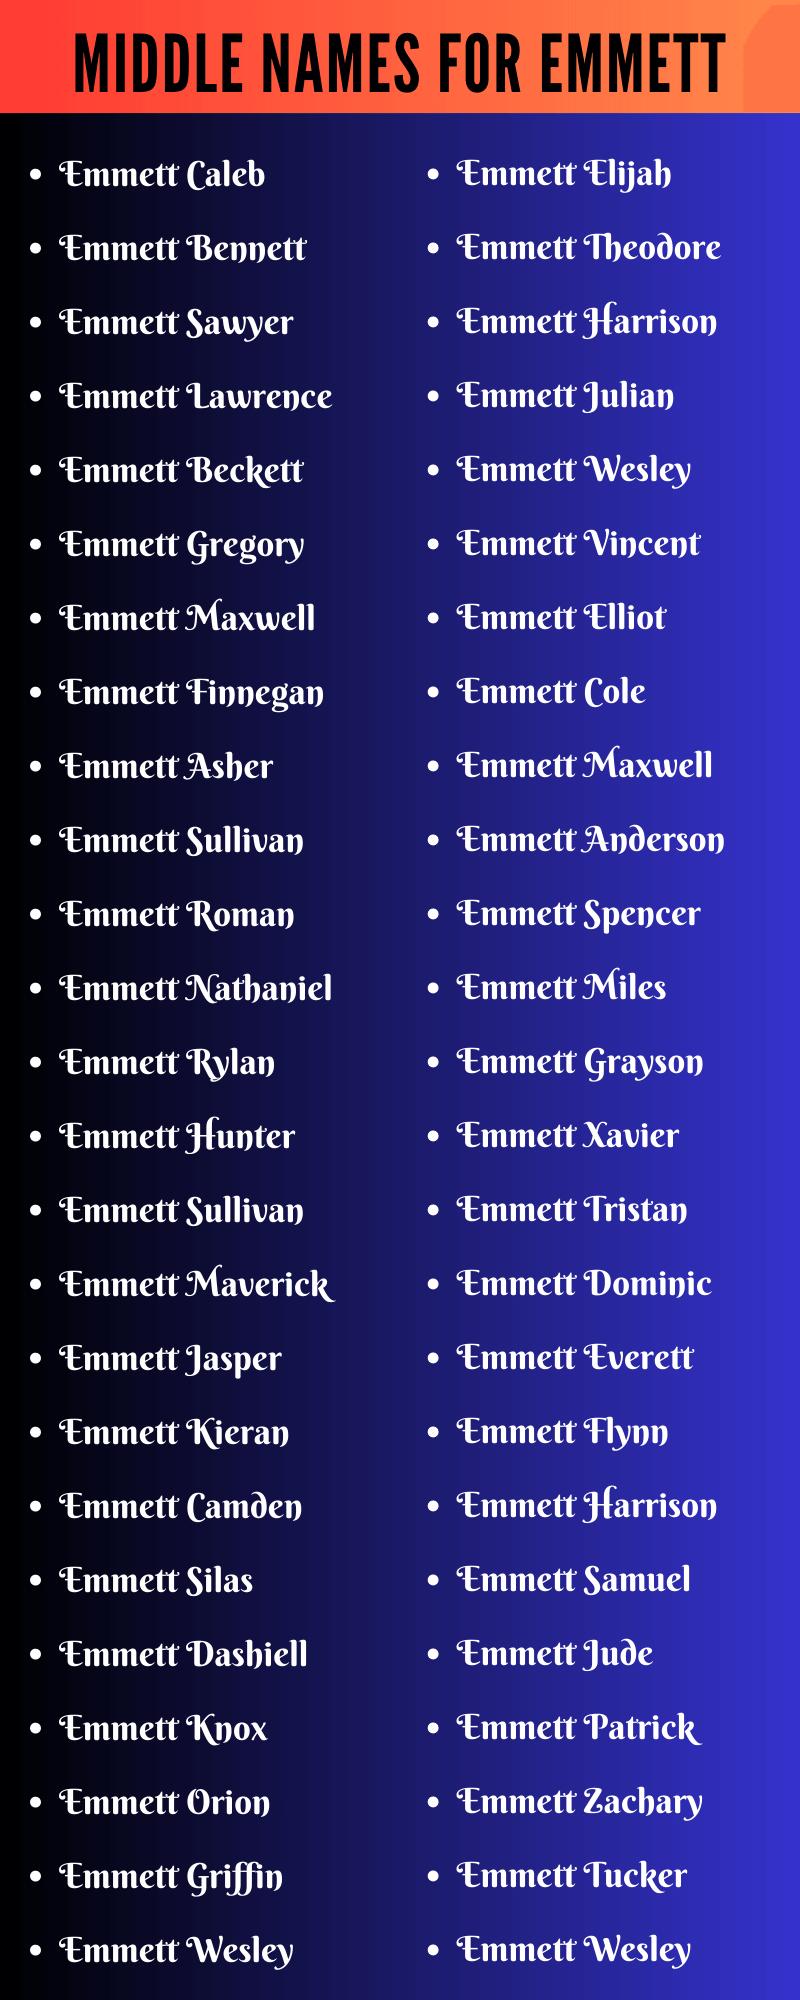 Middle Names For Emmett